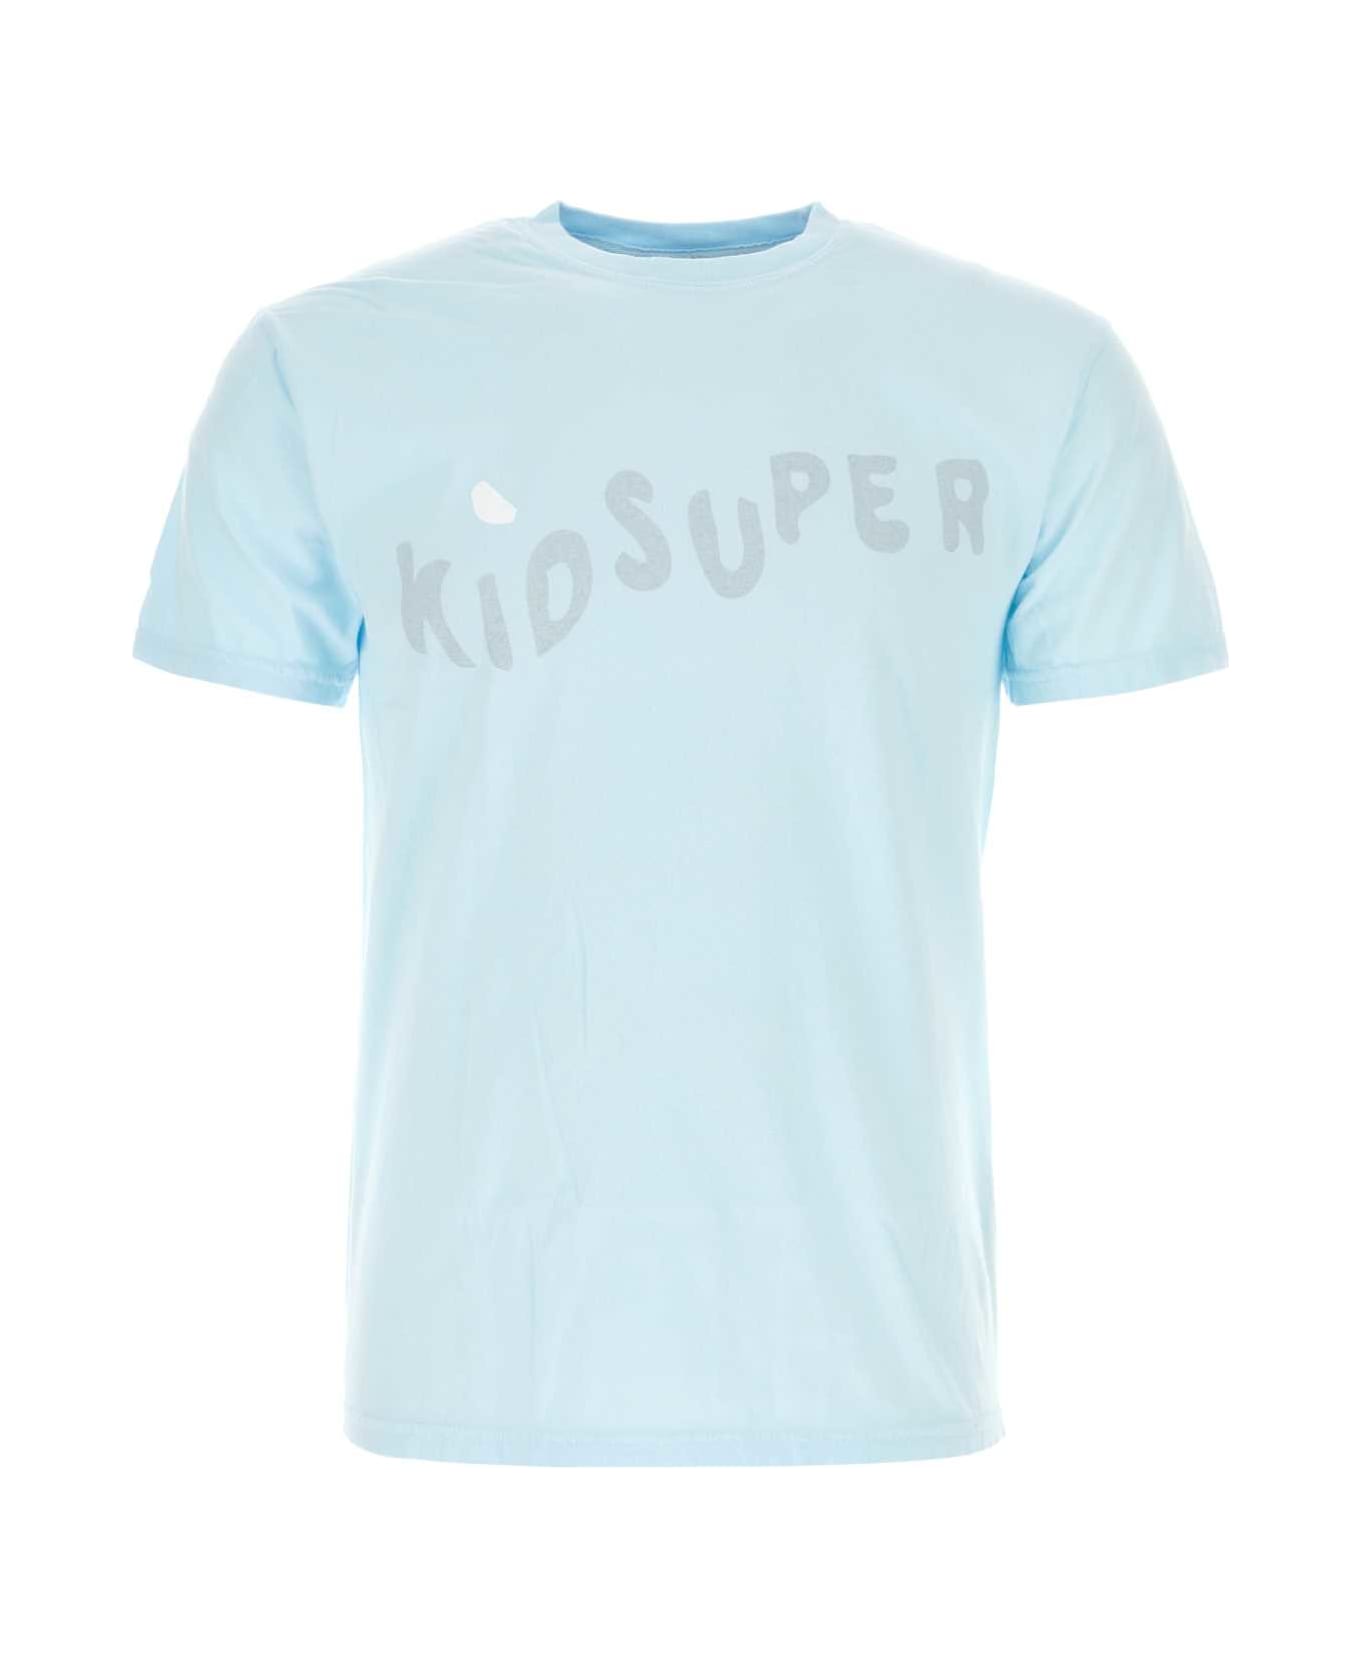 Kidsuper Light-blue Cotton T-shirt - KIDSUPERWAVE シャツ